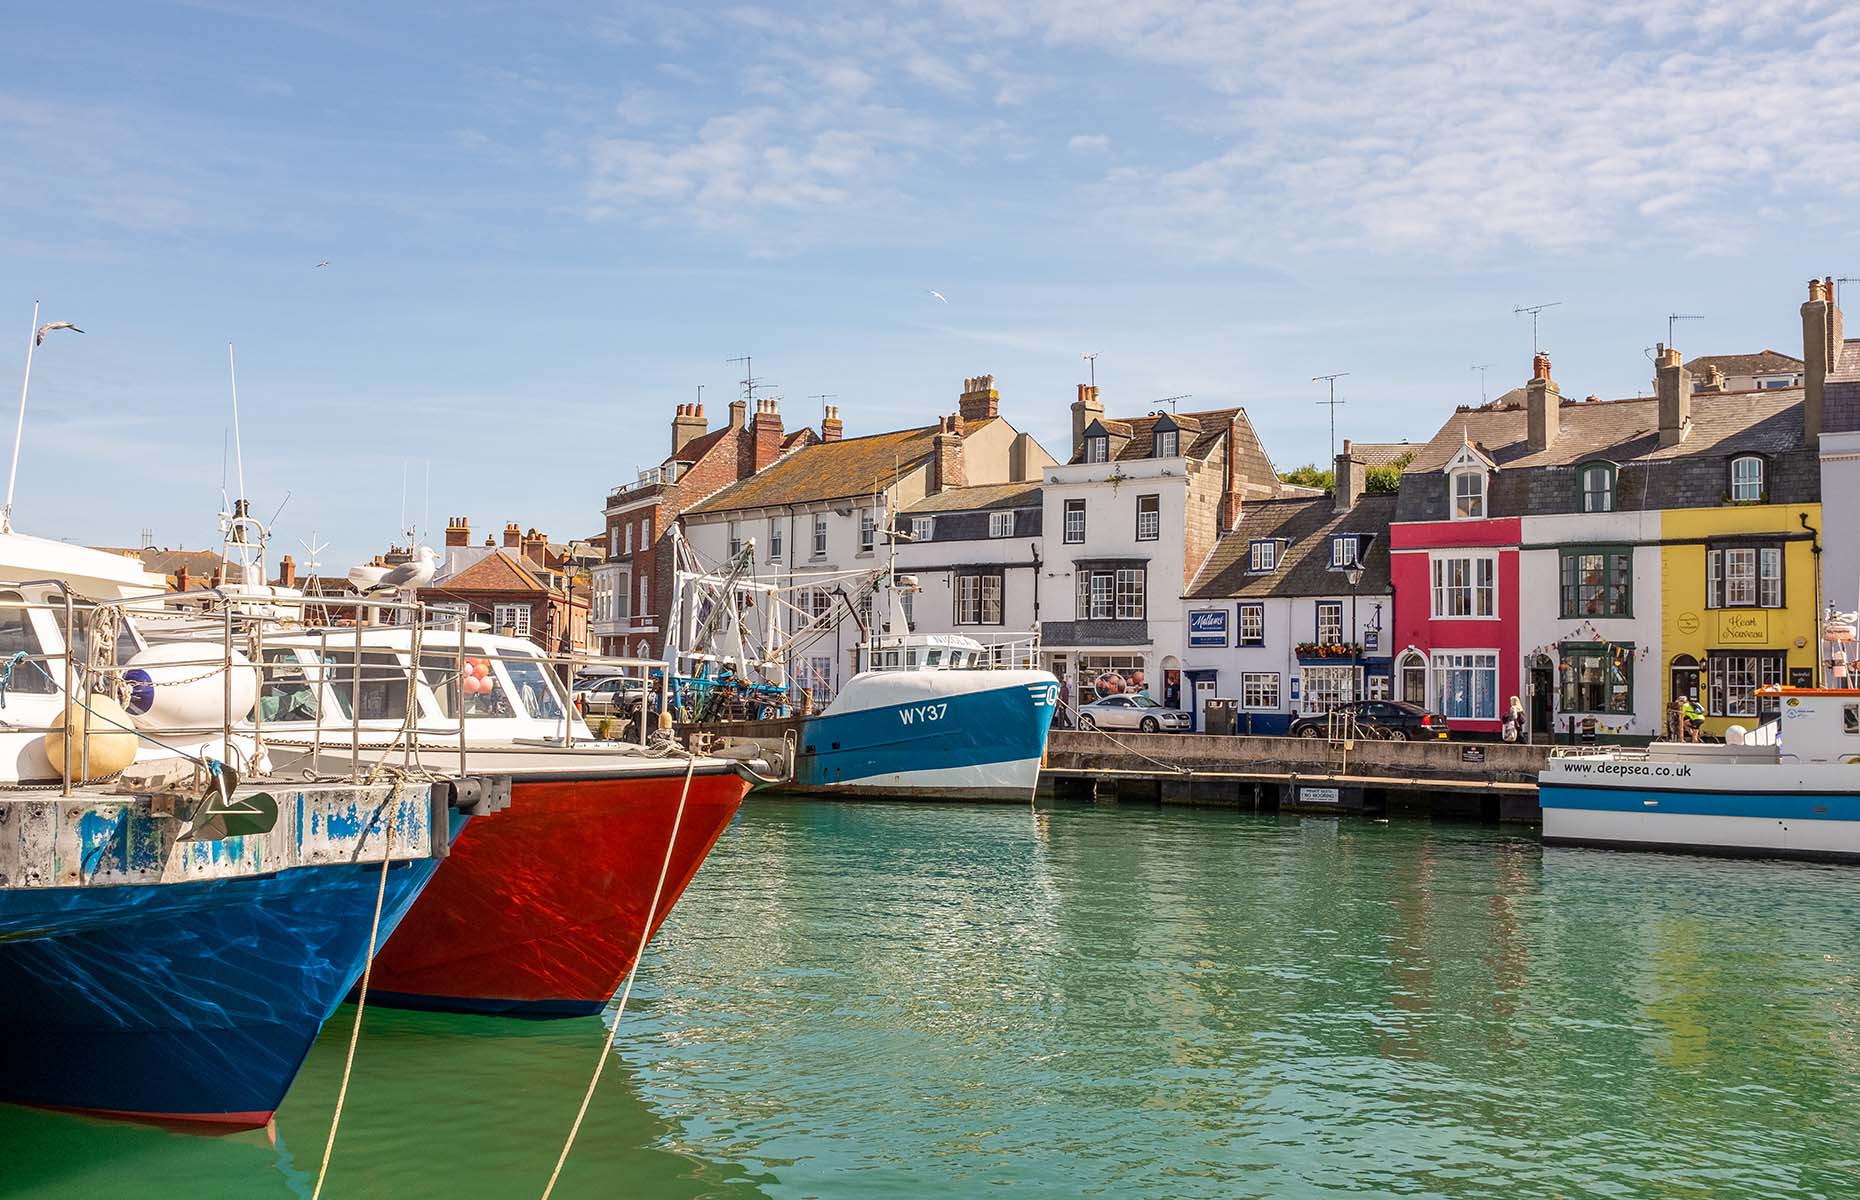 Weymouth in Dorset (Image: Glen Berlin/Shutterstock)